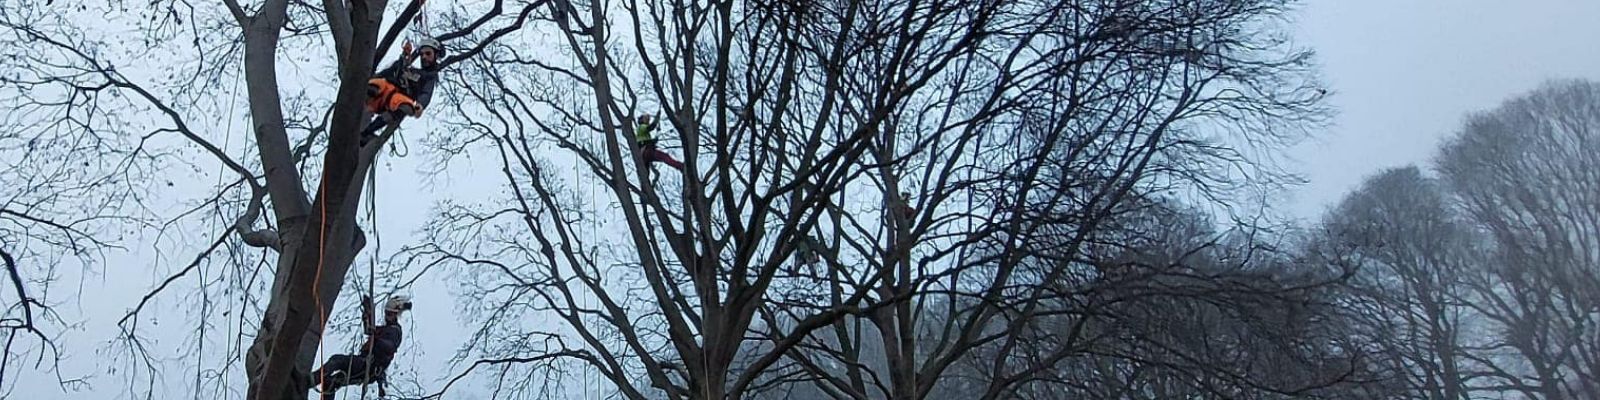 Tree climbing (base): lavoro in quota su fune, attività su albero